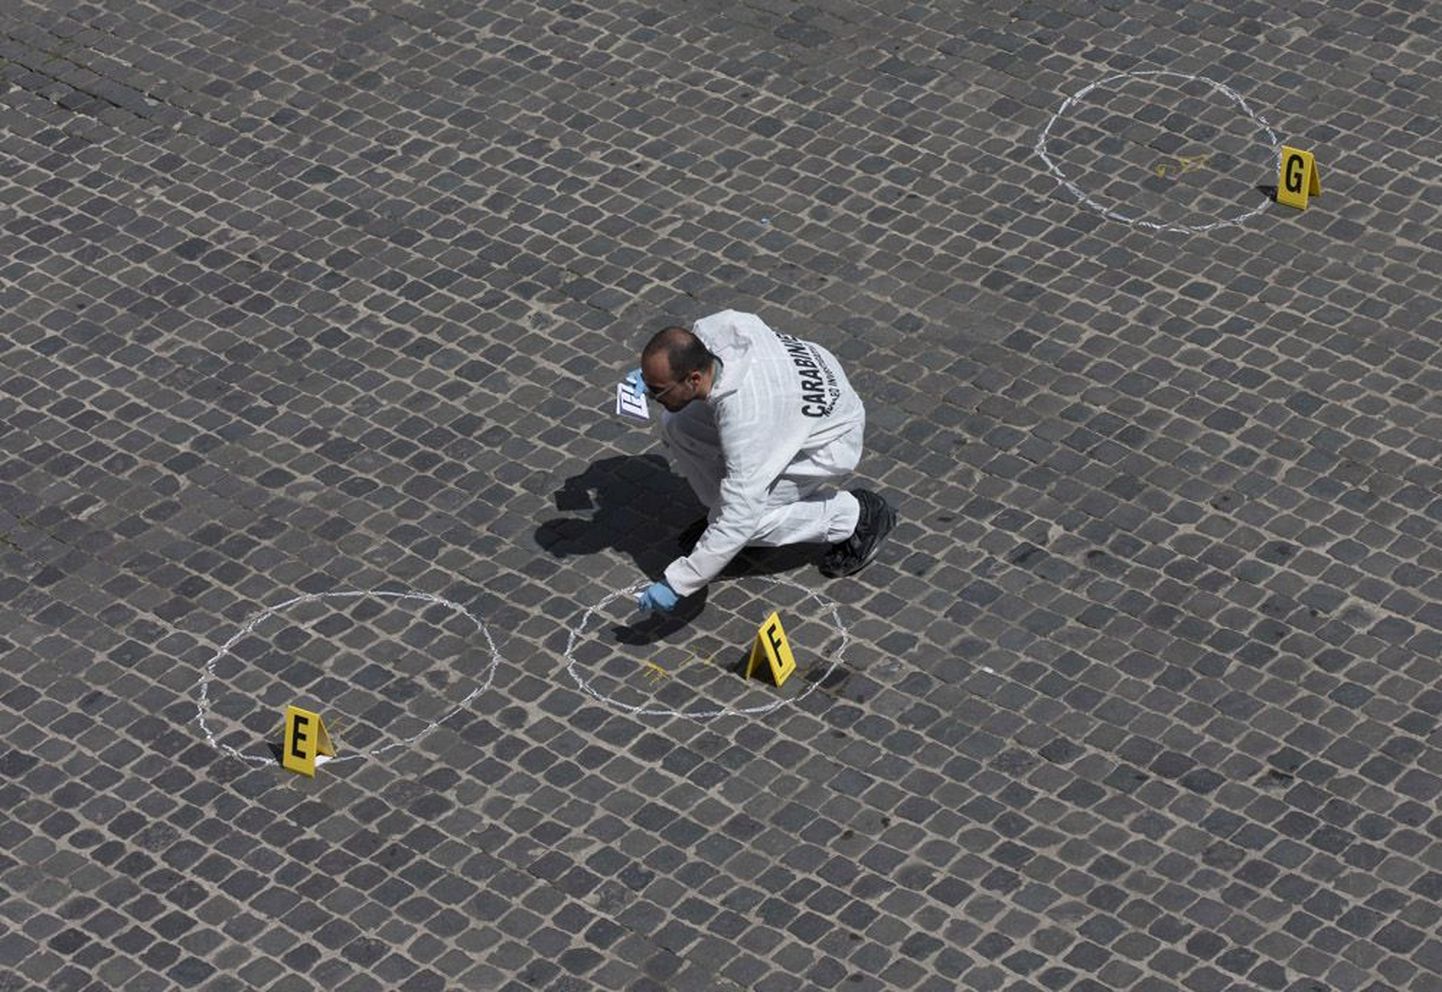 Politsei uurija kogumas tõendusmaterjali eile Roomas toimunud tulistamise kohta.